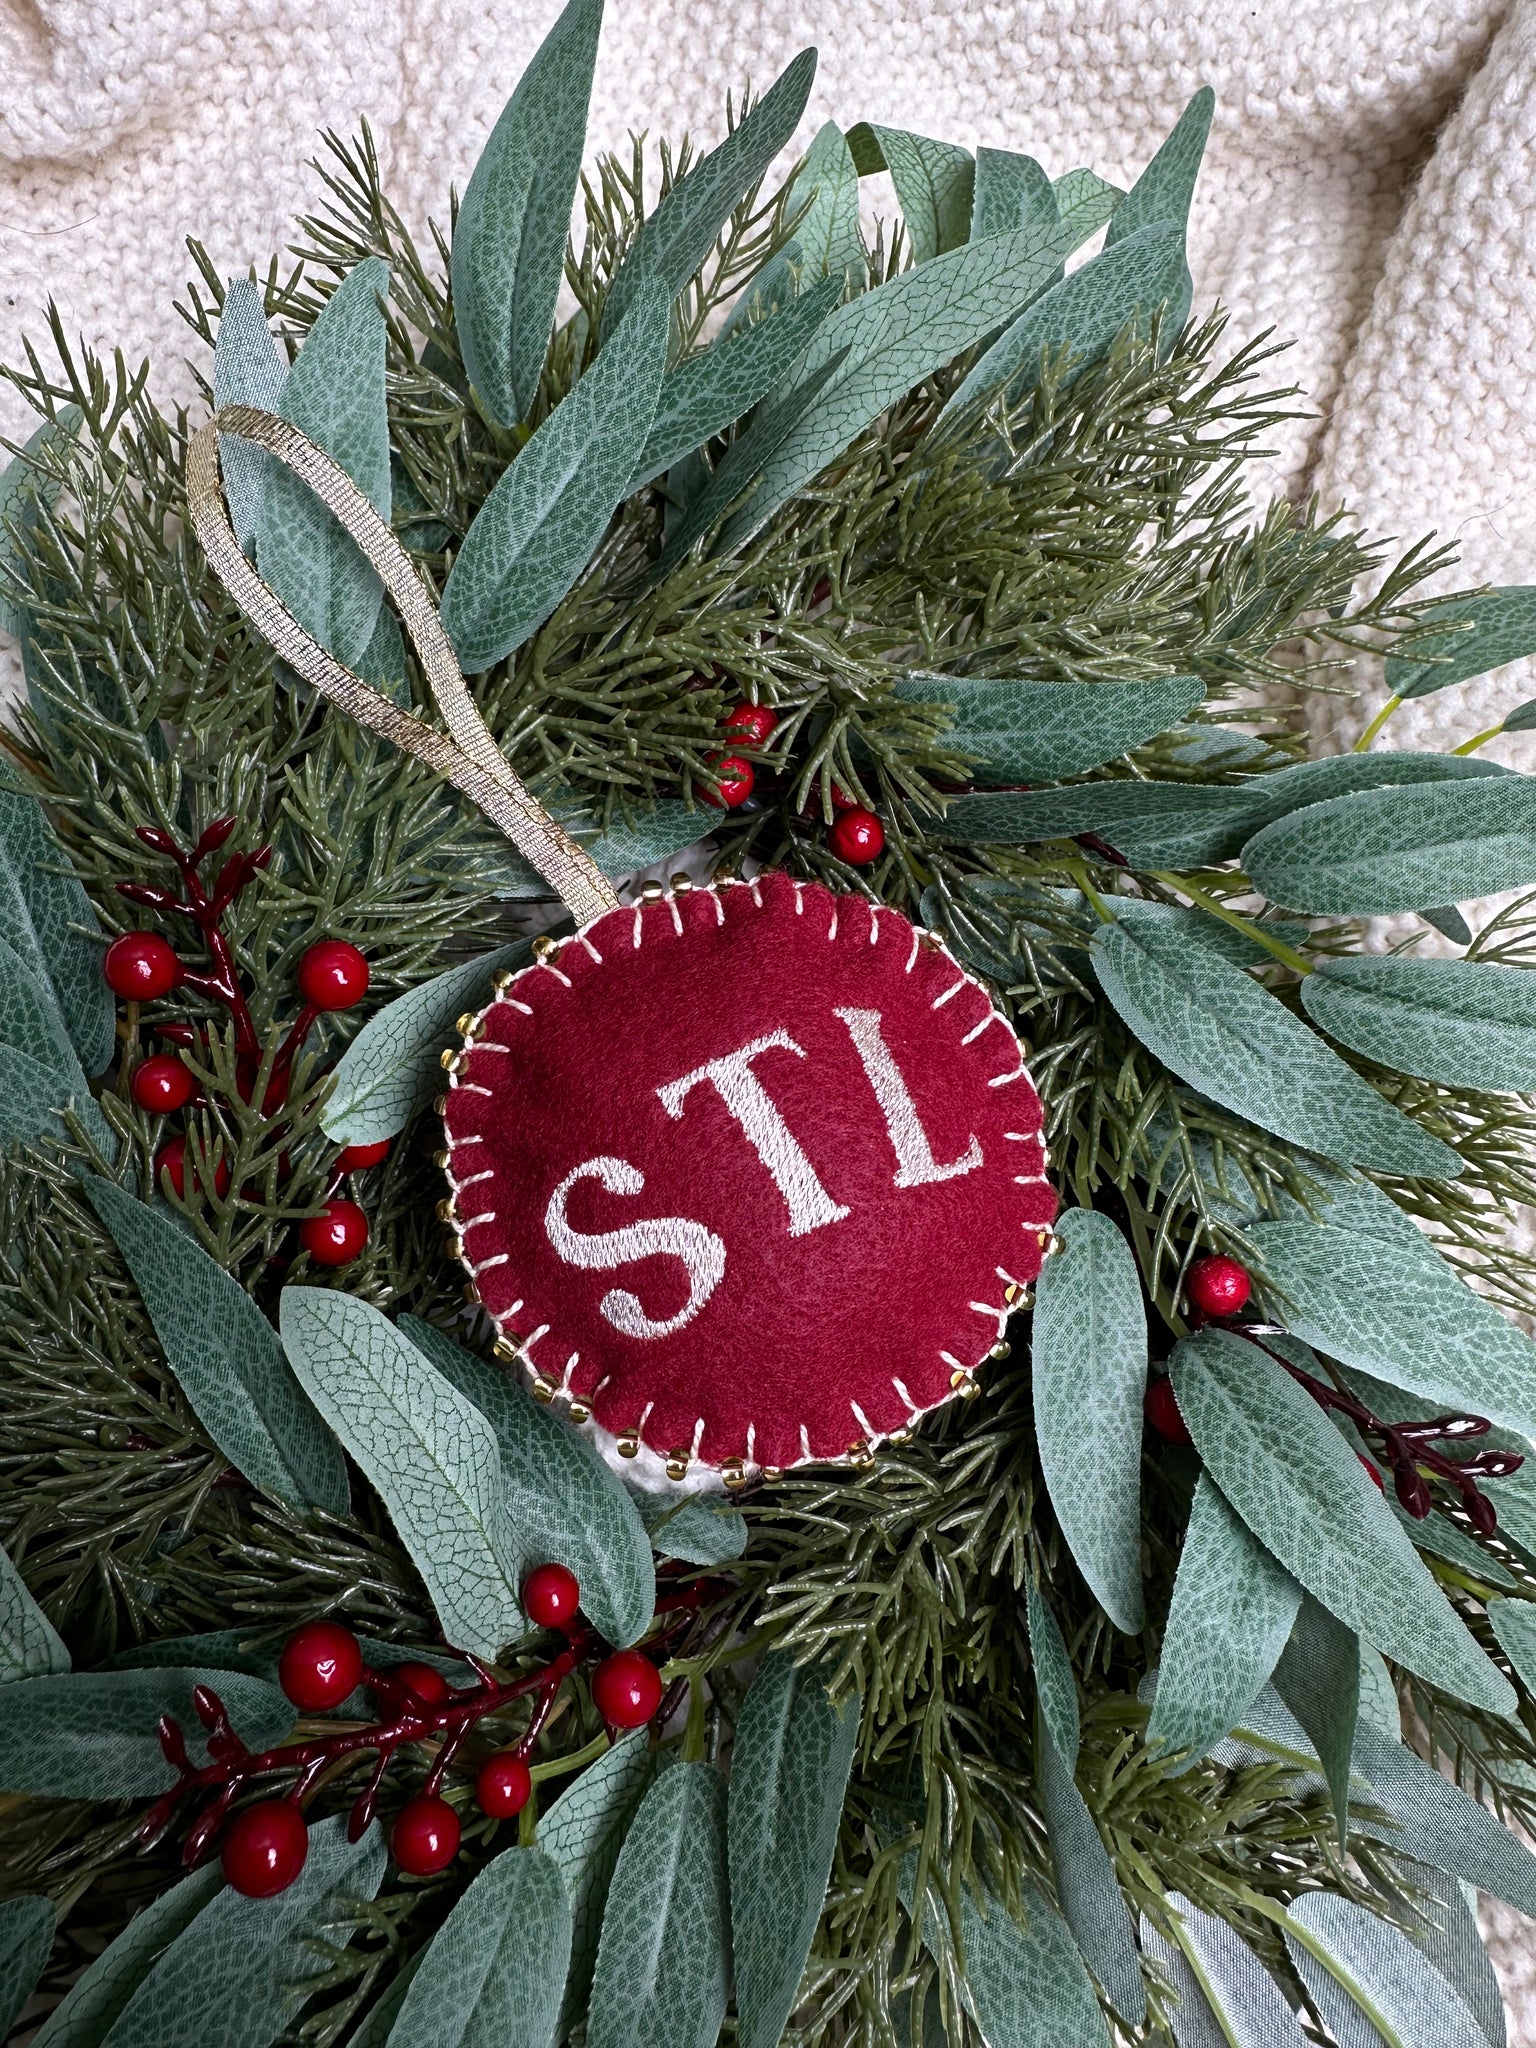 Saint Louis Hand Stitched Ornaments